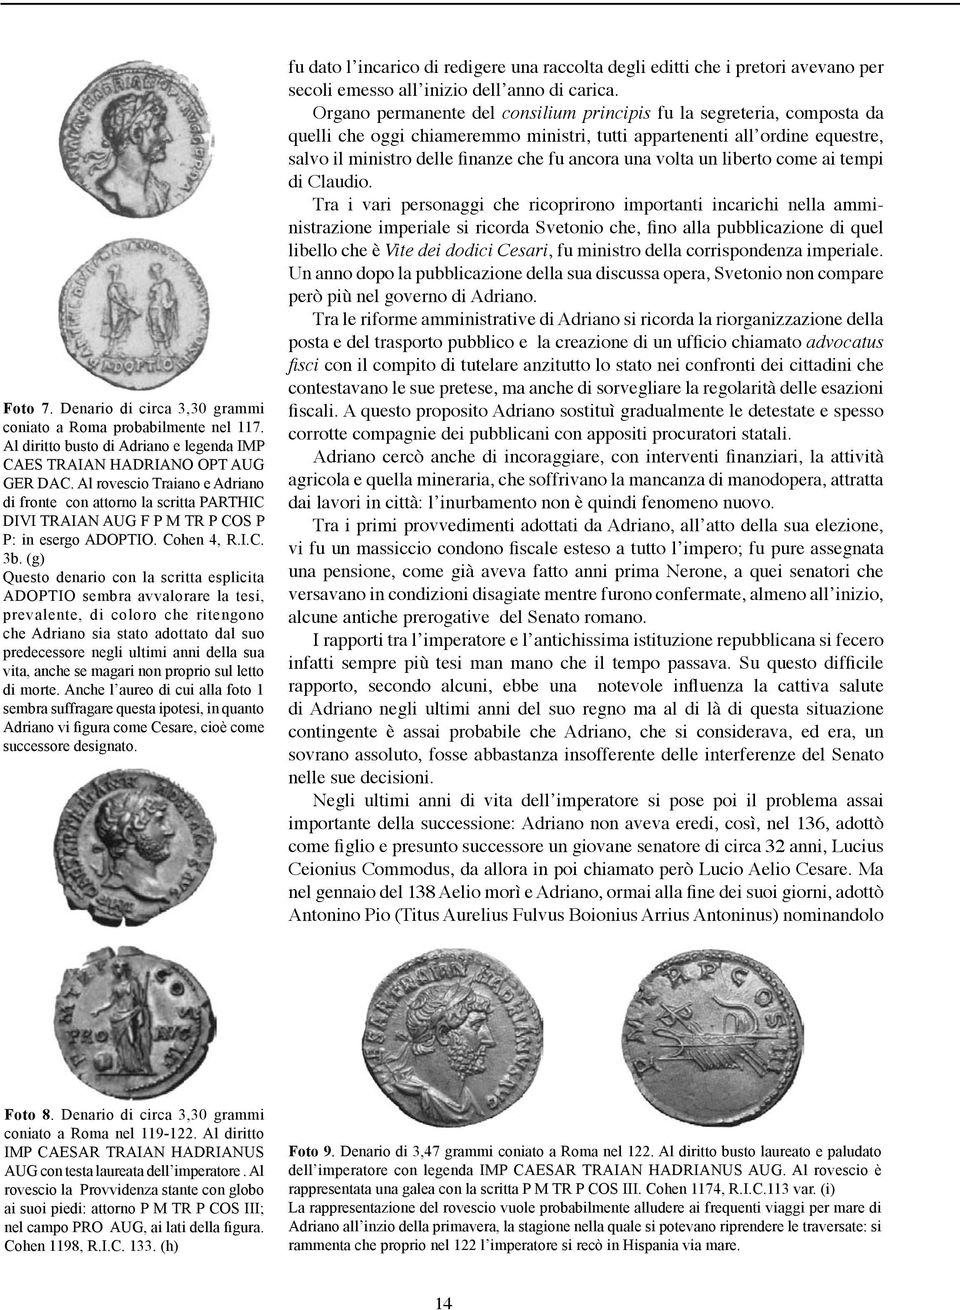 (g) Questo denario con la scritta esplicita ADOPTIO sembra avvalorare la tesi, prevalente, di coloro che ritengono che Adriano sia stato adottato dal suo predecessore negli ultimi anni della sua